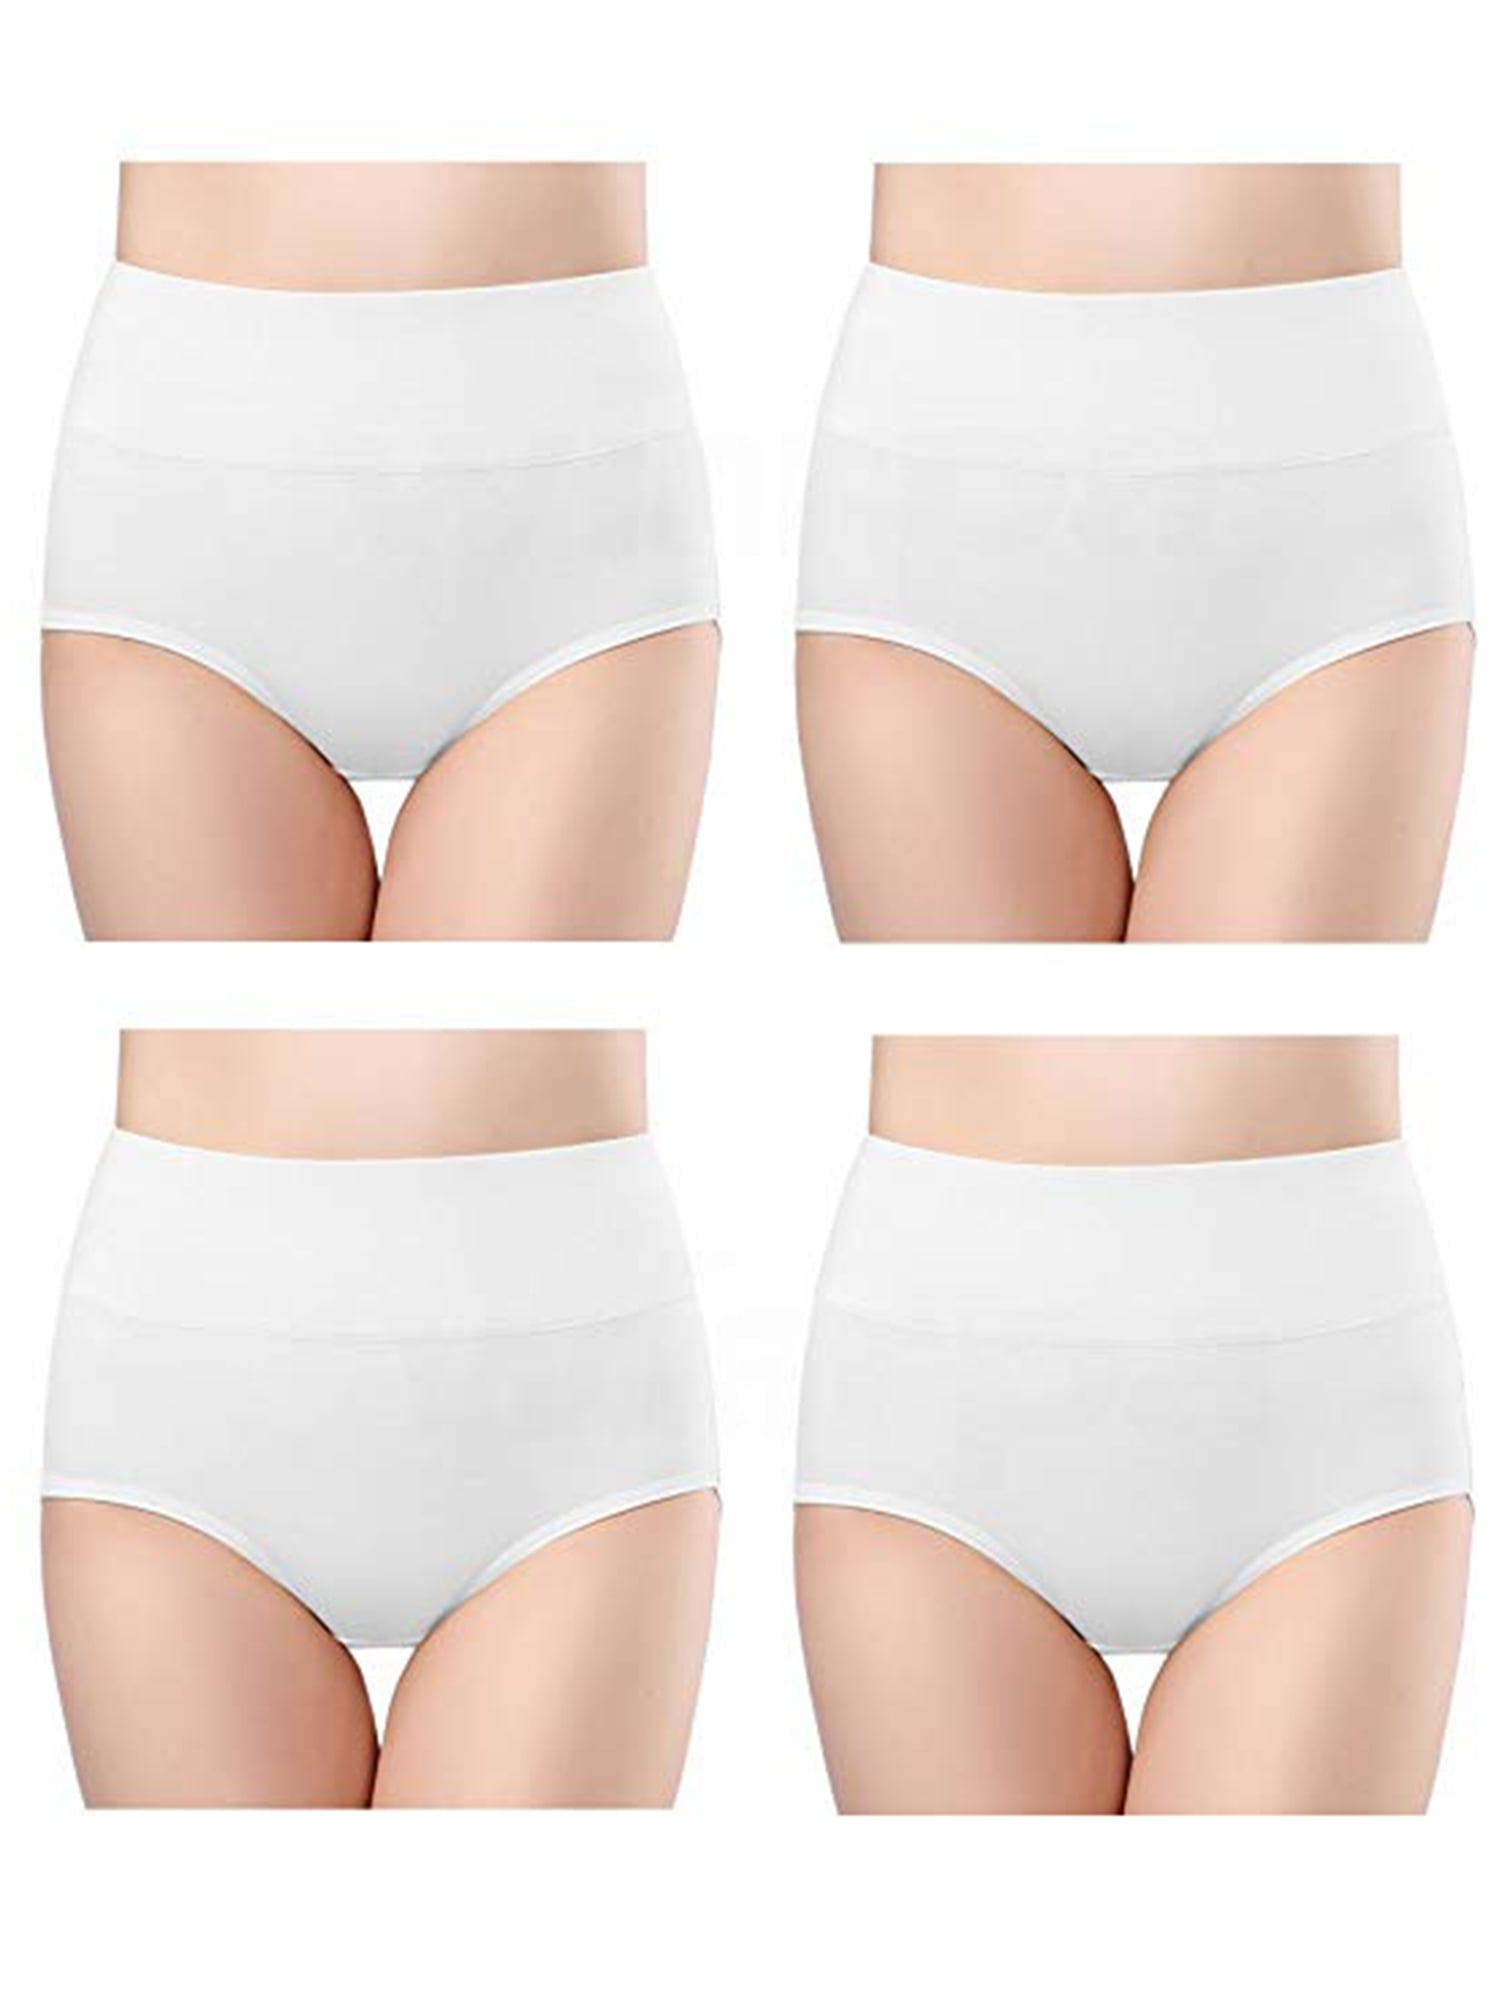 Womens Cotton Underwear High Waist Full Coverage Brief Panty 4